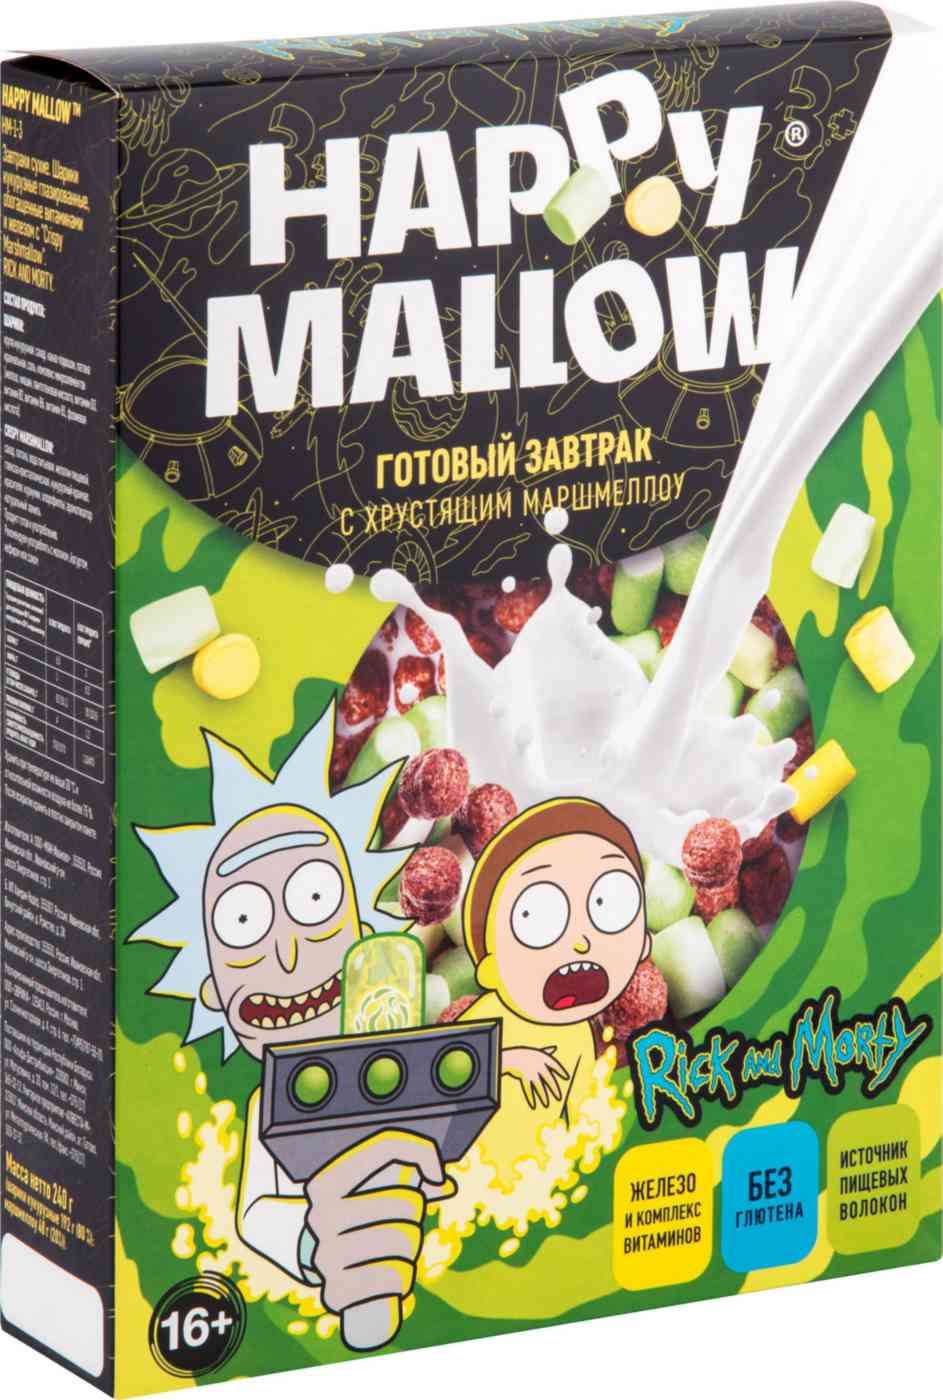 Готовый завтрак Happy Mallow Rick and Morty с хрустящим маршмеллоу 240 г